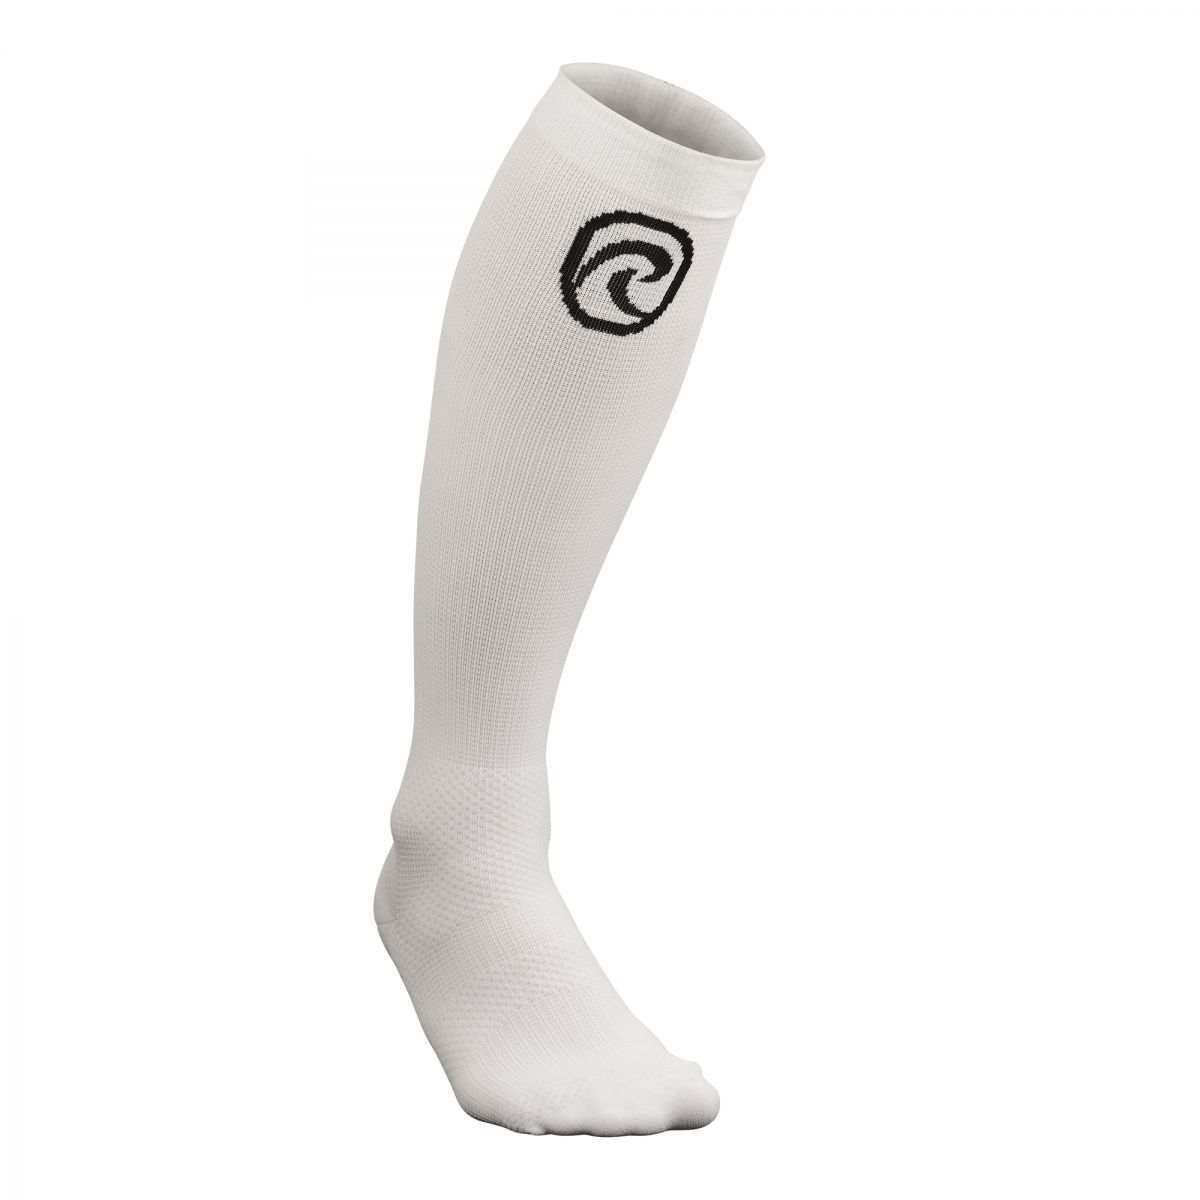 Rehband Compression Socks - White - L